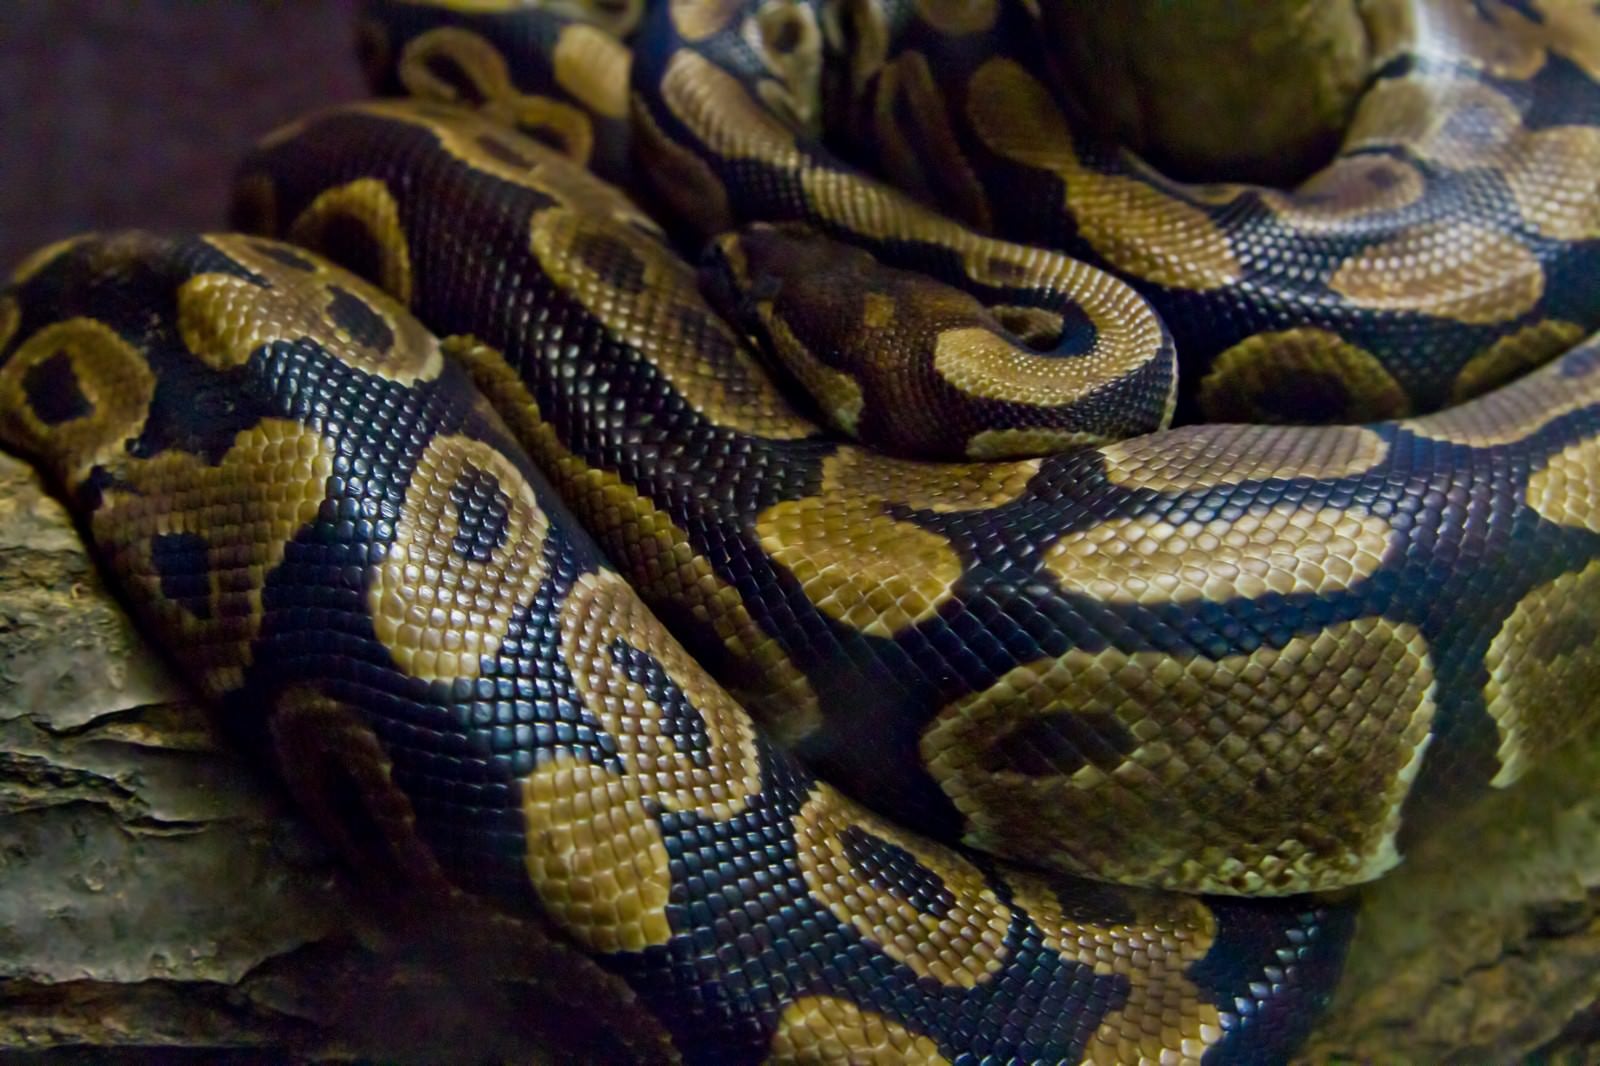 「ボールニシキヘビ」の写真